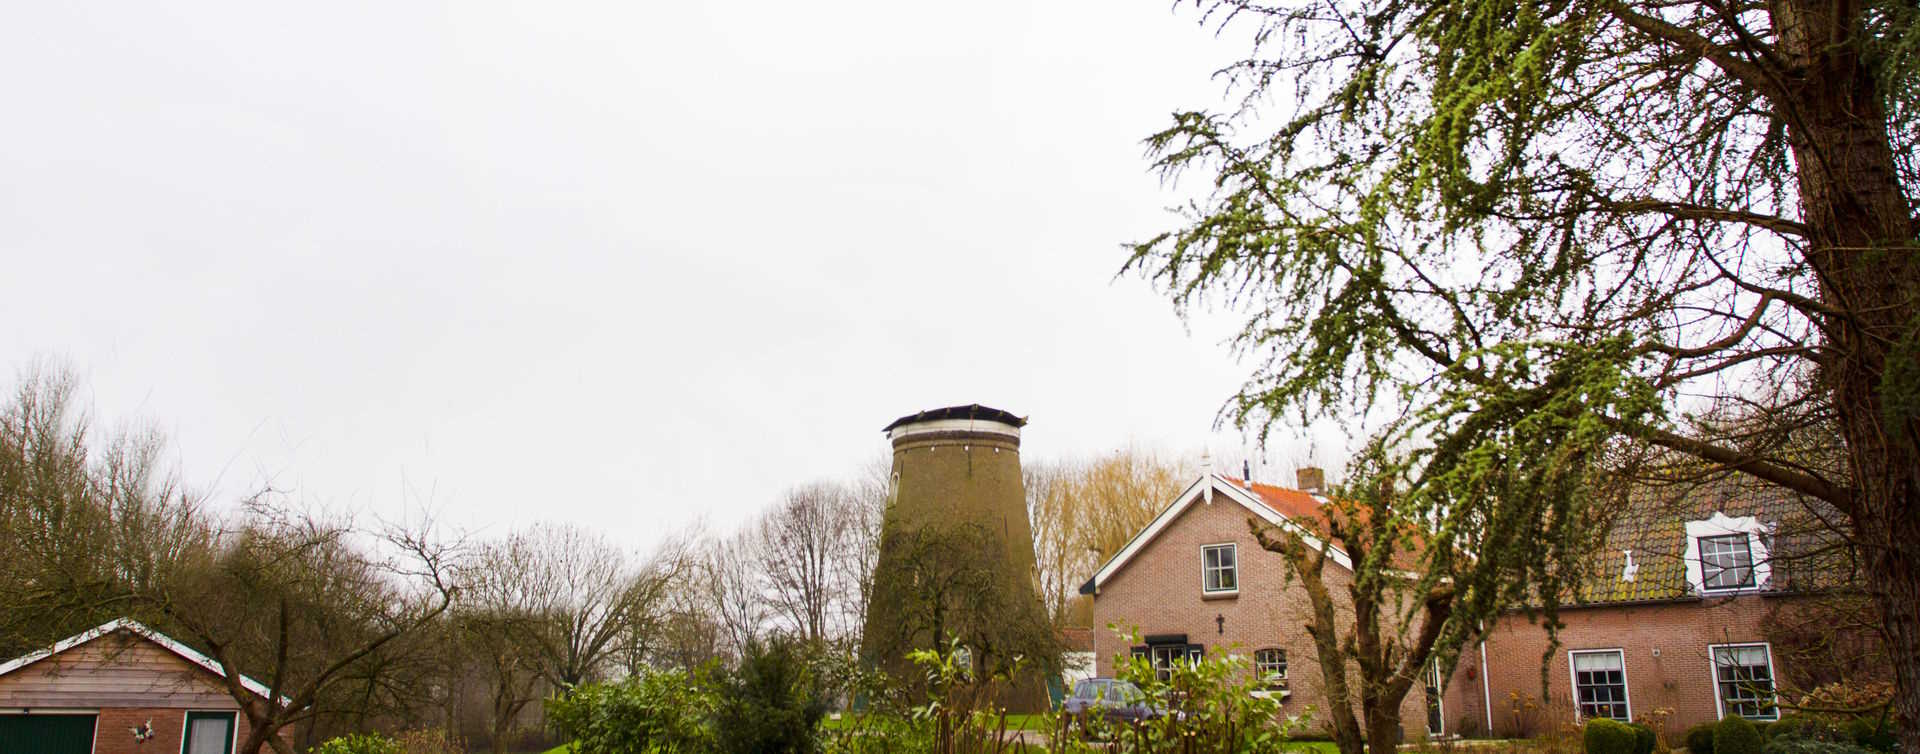 De omgeving van Berkhout Verzekeringen & Hypotheken, RegioBank in Heerjansdam